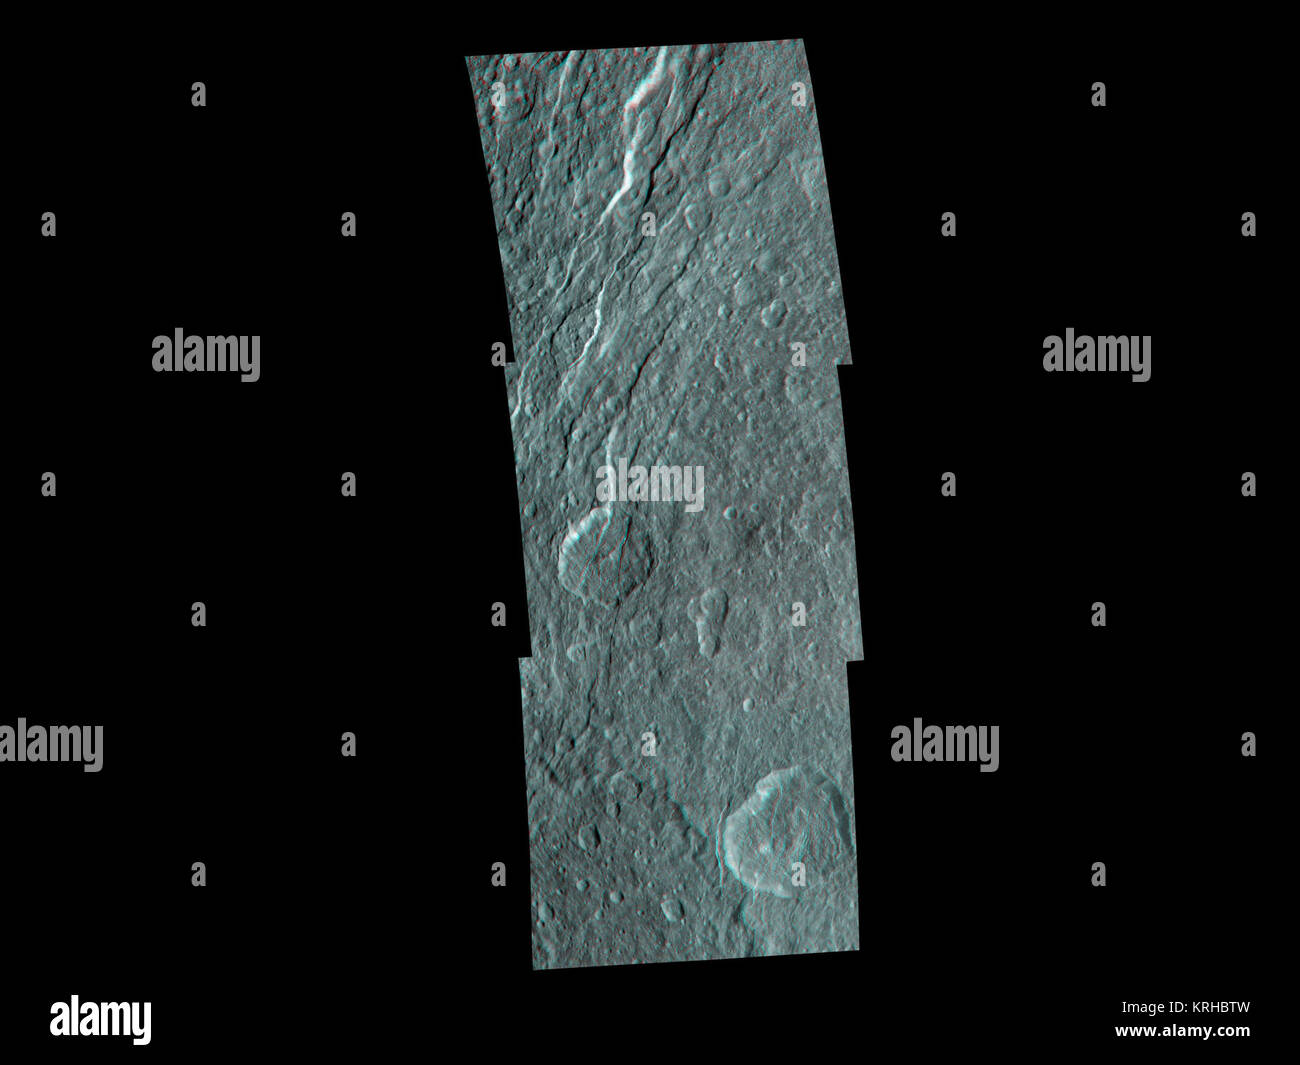 Wispy Frakturen durch Kratern terrain Cut auf dem Saturnmond Rhea in dieser hohen Auflösung, 3-D-Bild von der NASA-Raumsonde Cassini. Das Bild zeigt ein Detail vorher nicht gesehen. Das 3-D-Ansicht ist ein Mosaik aus 11 verschiedenen schwarze und weiße Bilder, die aus leicht unterschiedlichen Blickwinkeln aufgenommen wurden. Die Bilder sind so verknüpft, dass das linke und das rechte Auge des Betrachters, bzw. und separat, siehe eine linke und eine rechte Bild der schwarzen und weißen Stereopaar Wenn durch rot-grün-Brille. Obwohl Rhea's Oberfläche ist meist dicht Verkratert, was auf eine geringe geologische Evolution, Stockfoto